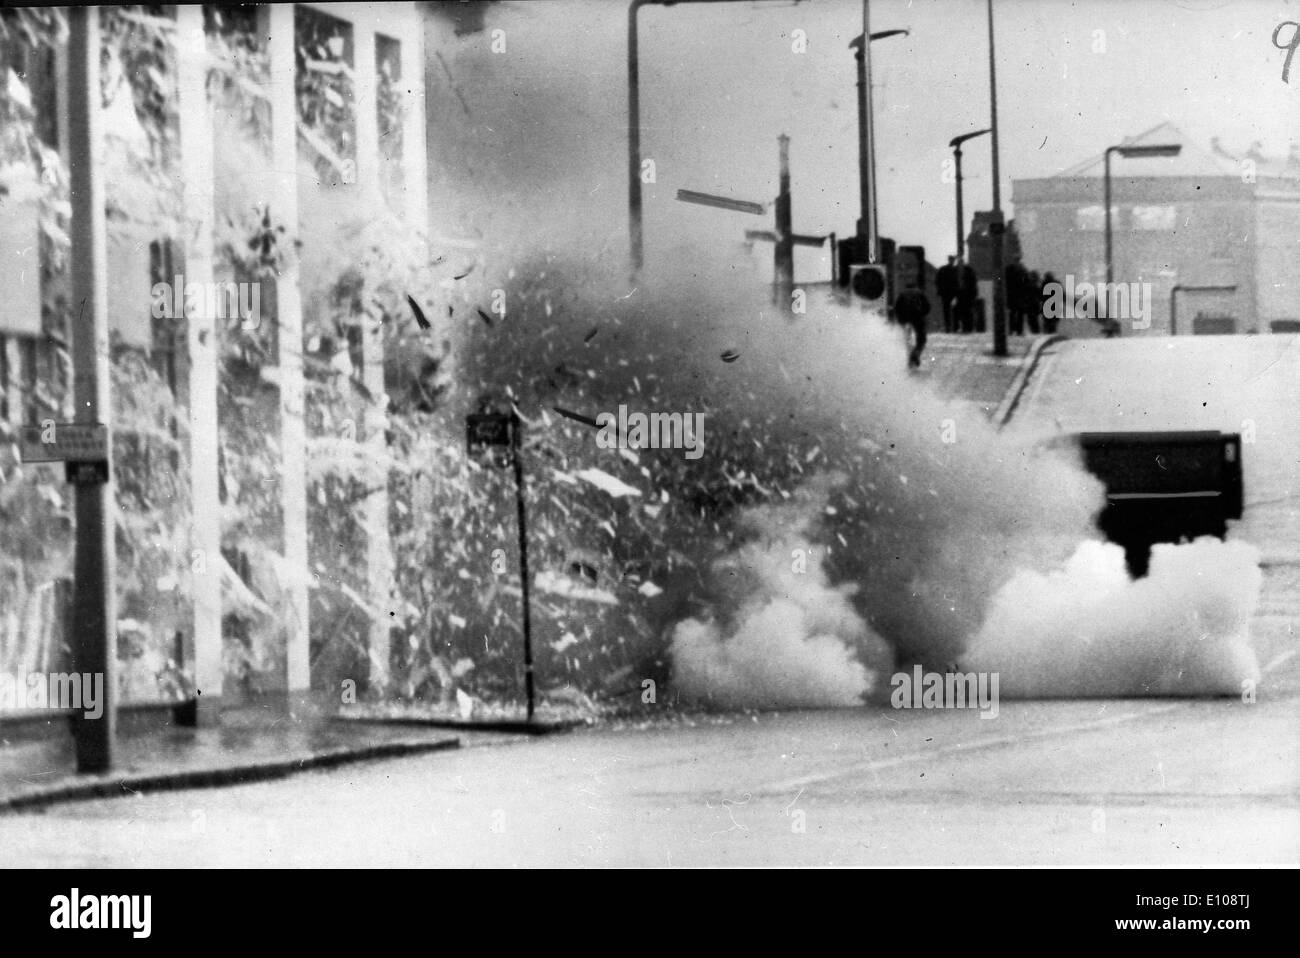 Terroristischen Bombenanschlag. IRA Jahre 1970 1972 sah eine Explosion der politischen Gewalt in Nordirland, Höchststand im Jahr 1972, wenn Stockfoto